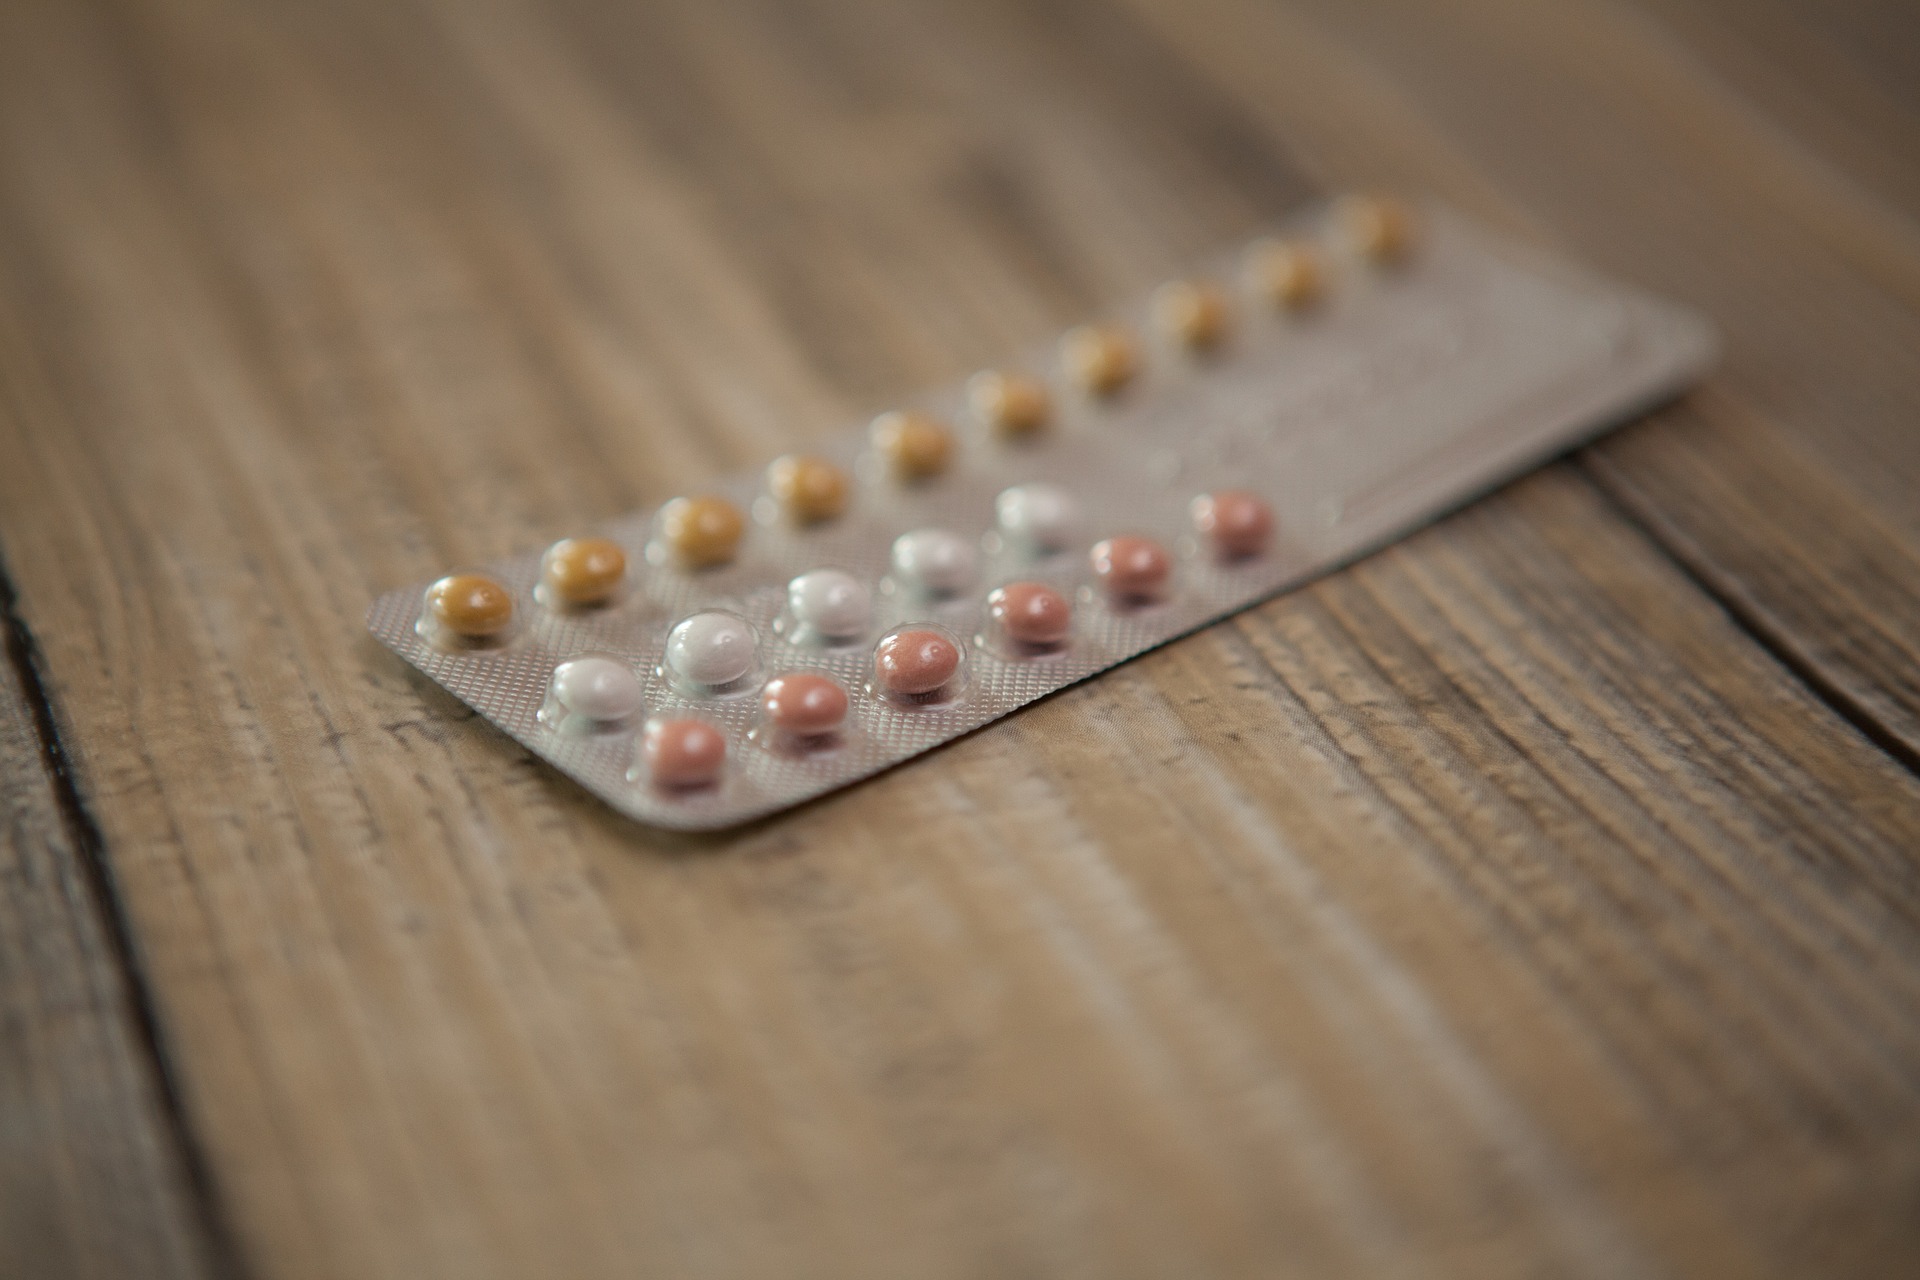 Les idfférents moyens de contraception